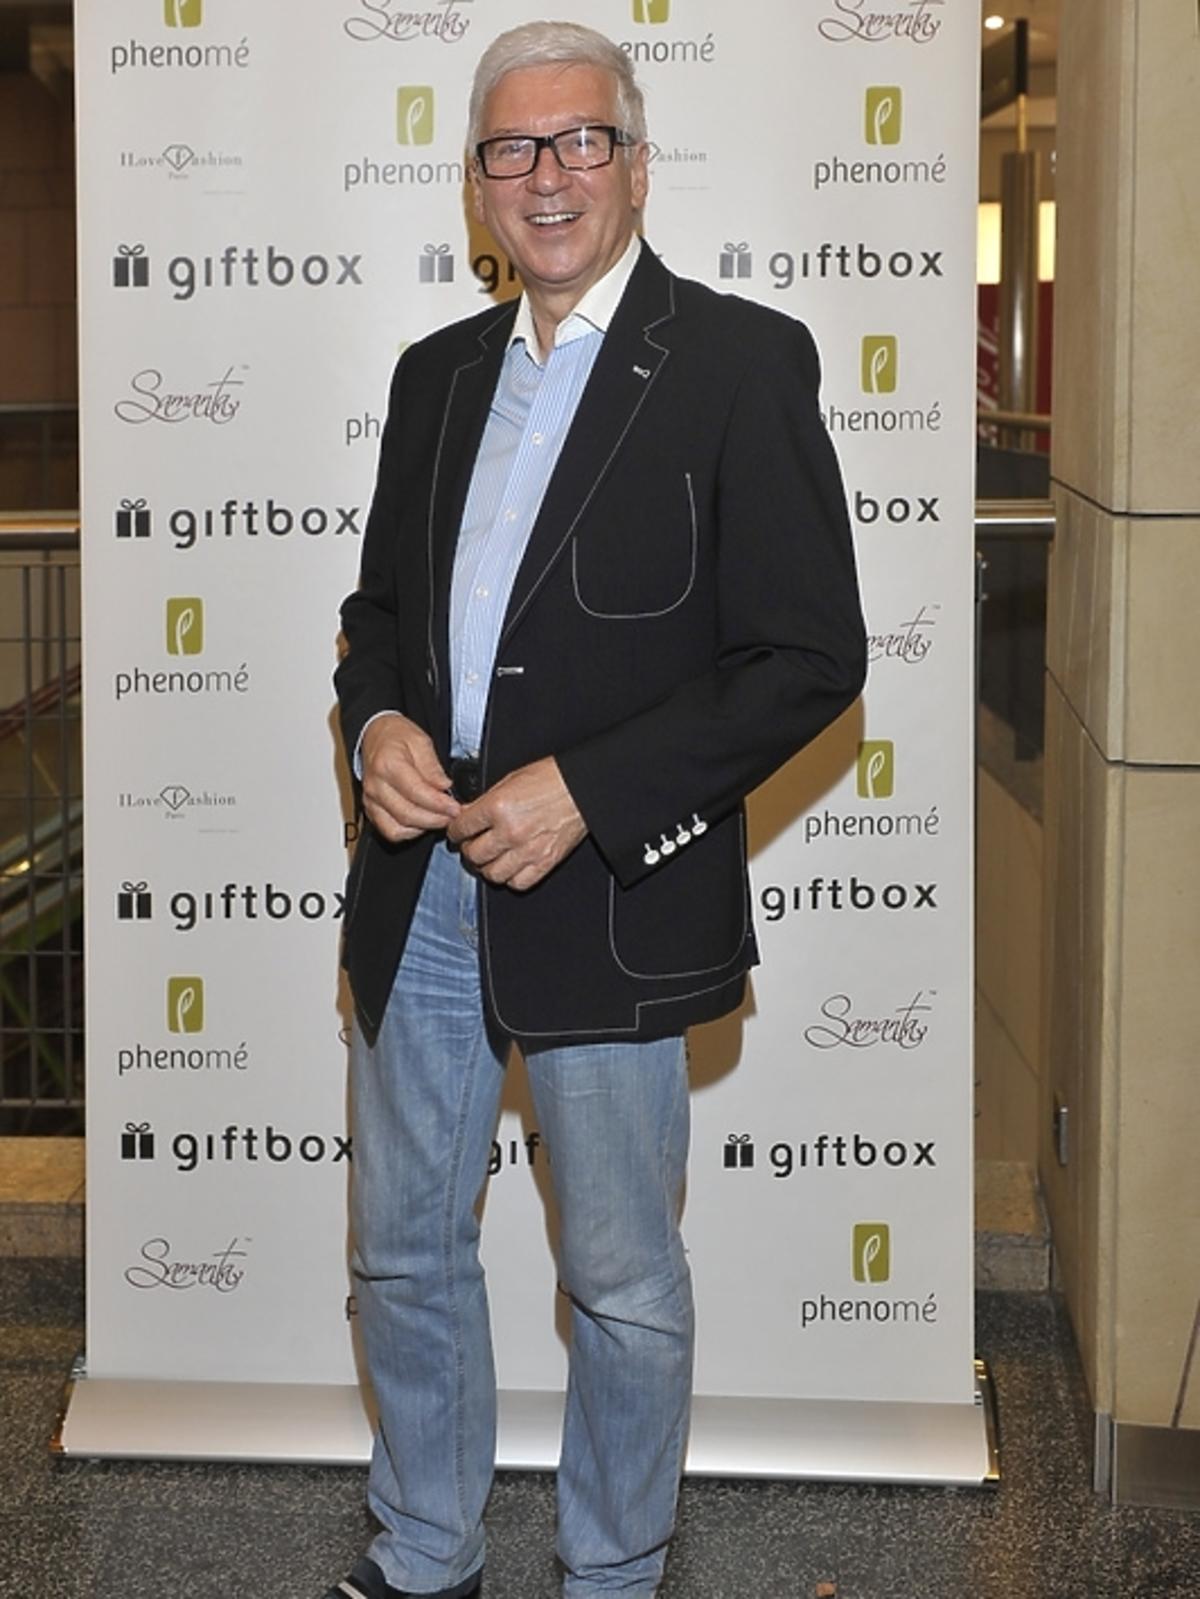 Ryszard Rembiszewski na premierze Gift Box Eco w Phenome 